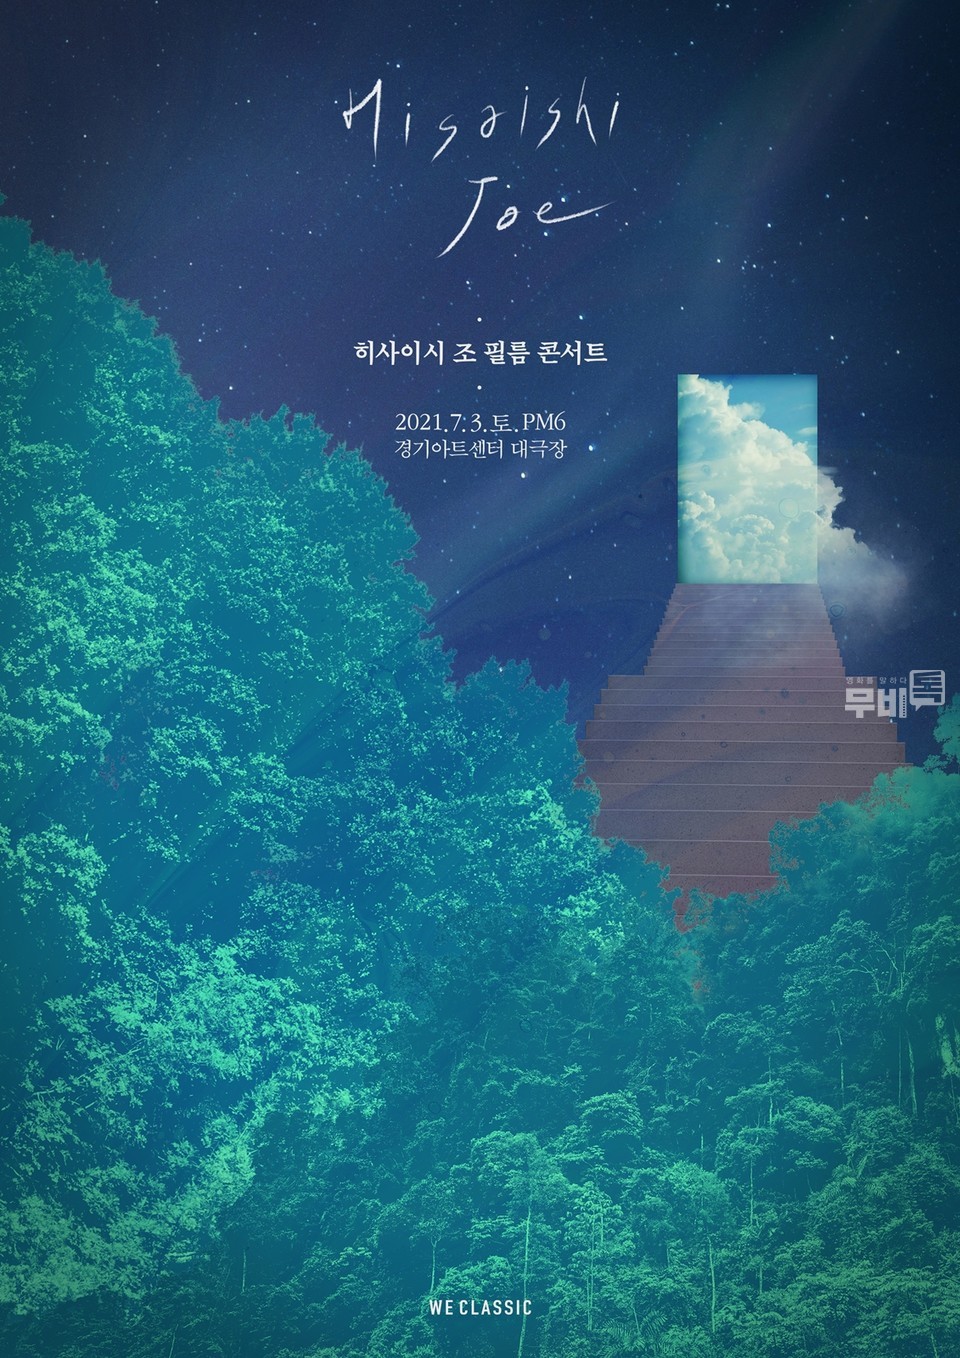 히사이시 조 필름 콘서트 공식 포스터